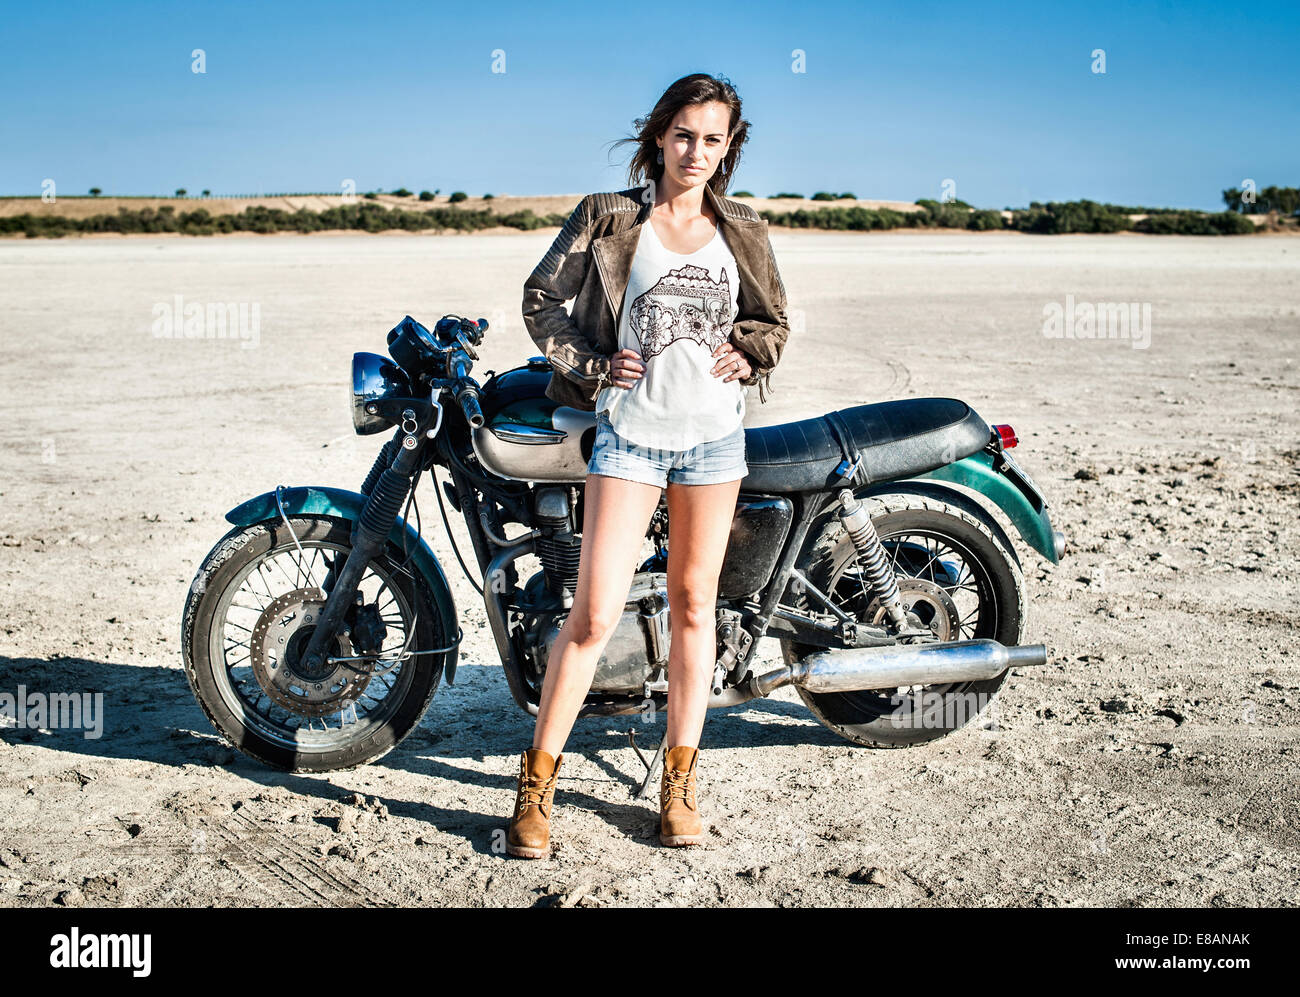 Ritratto di donna motociclista sulla pianura arida, Cagliari, Sardegna, Italia Foto Stock